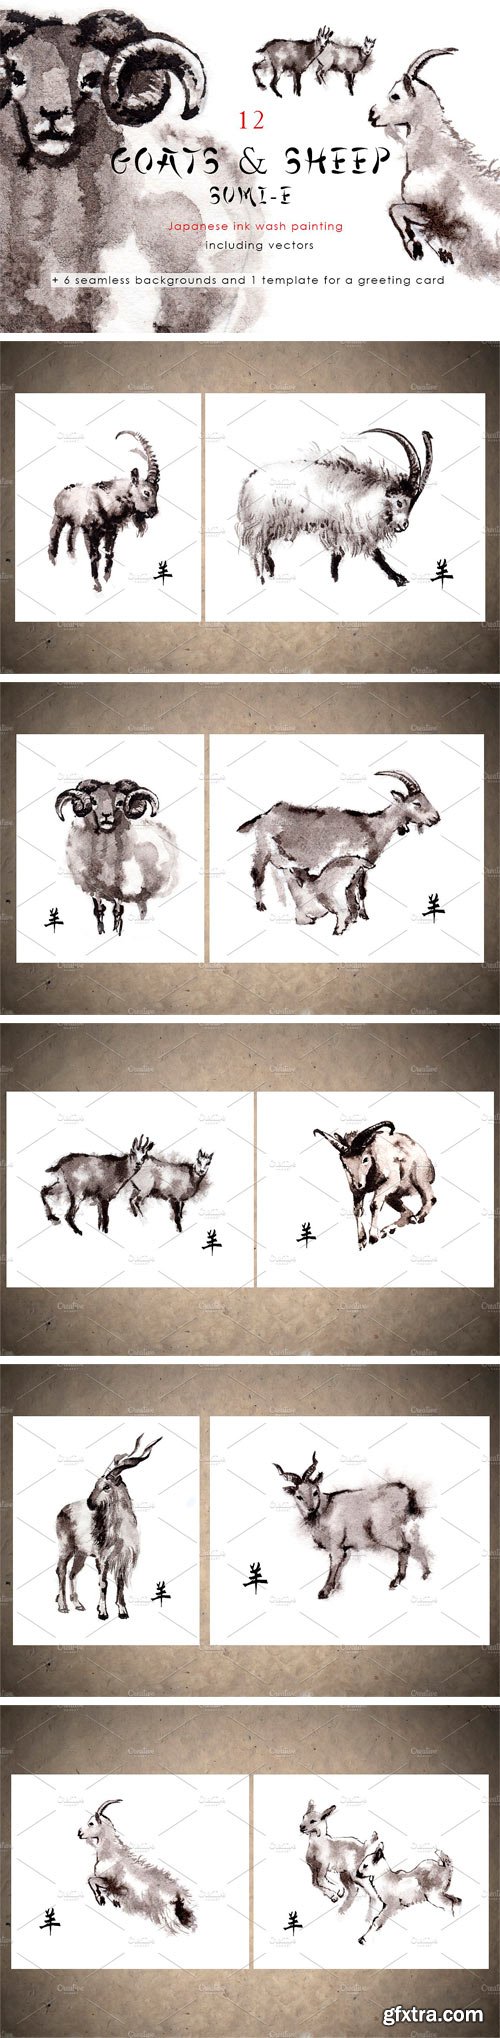 CM 1480609 - Goats and Sheep Sumi-e